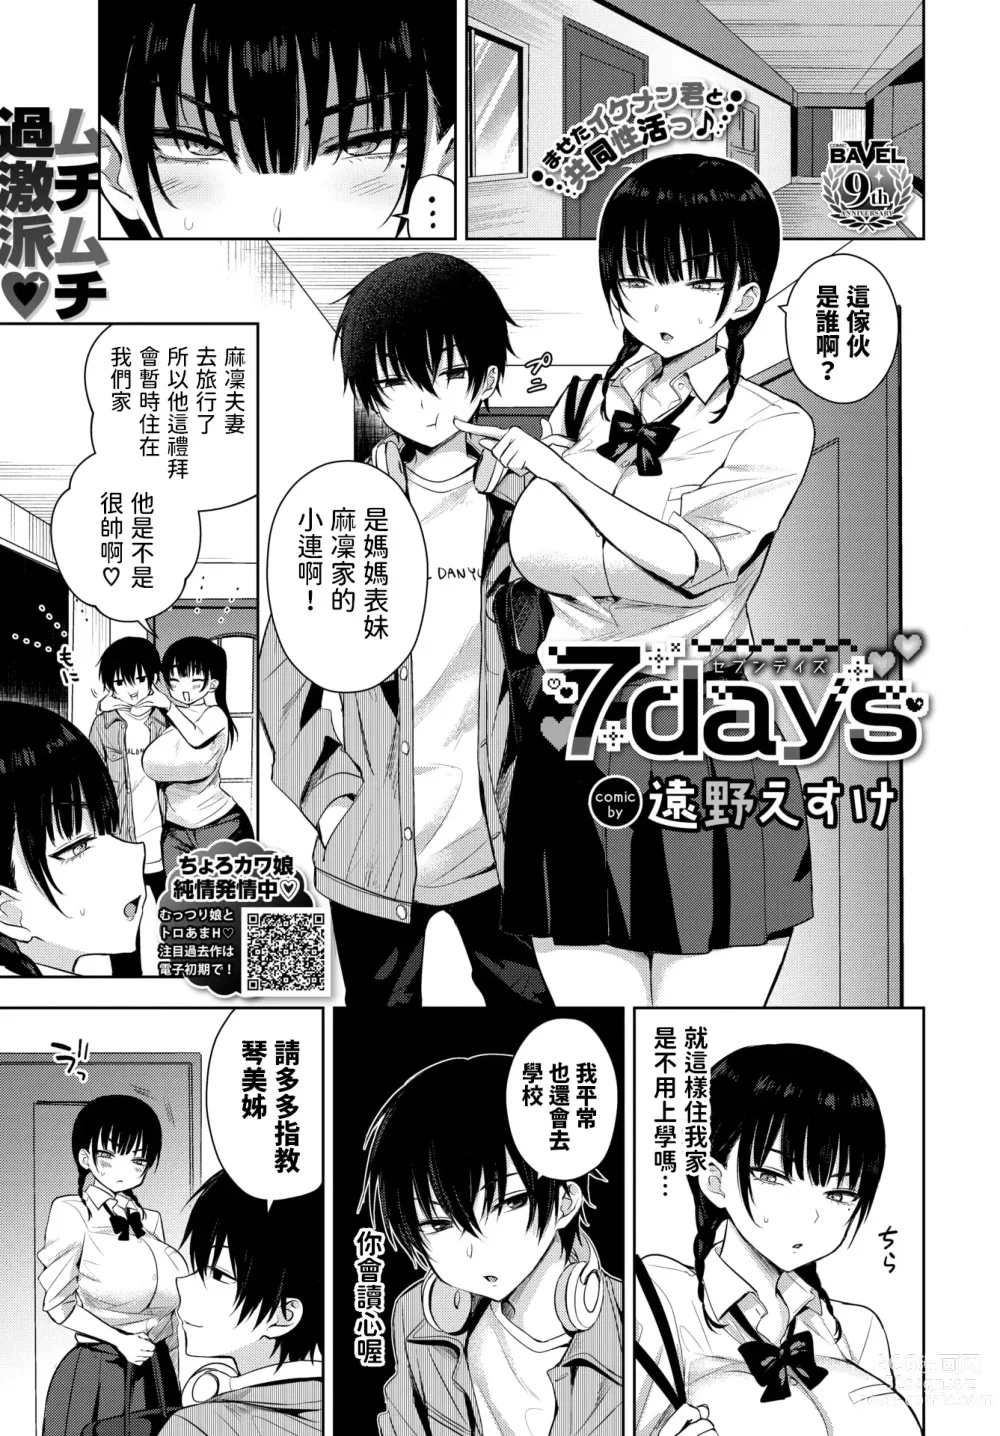 Page 1 of manga 7days